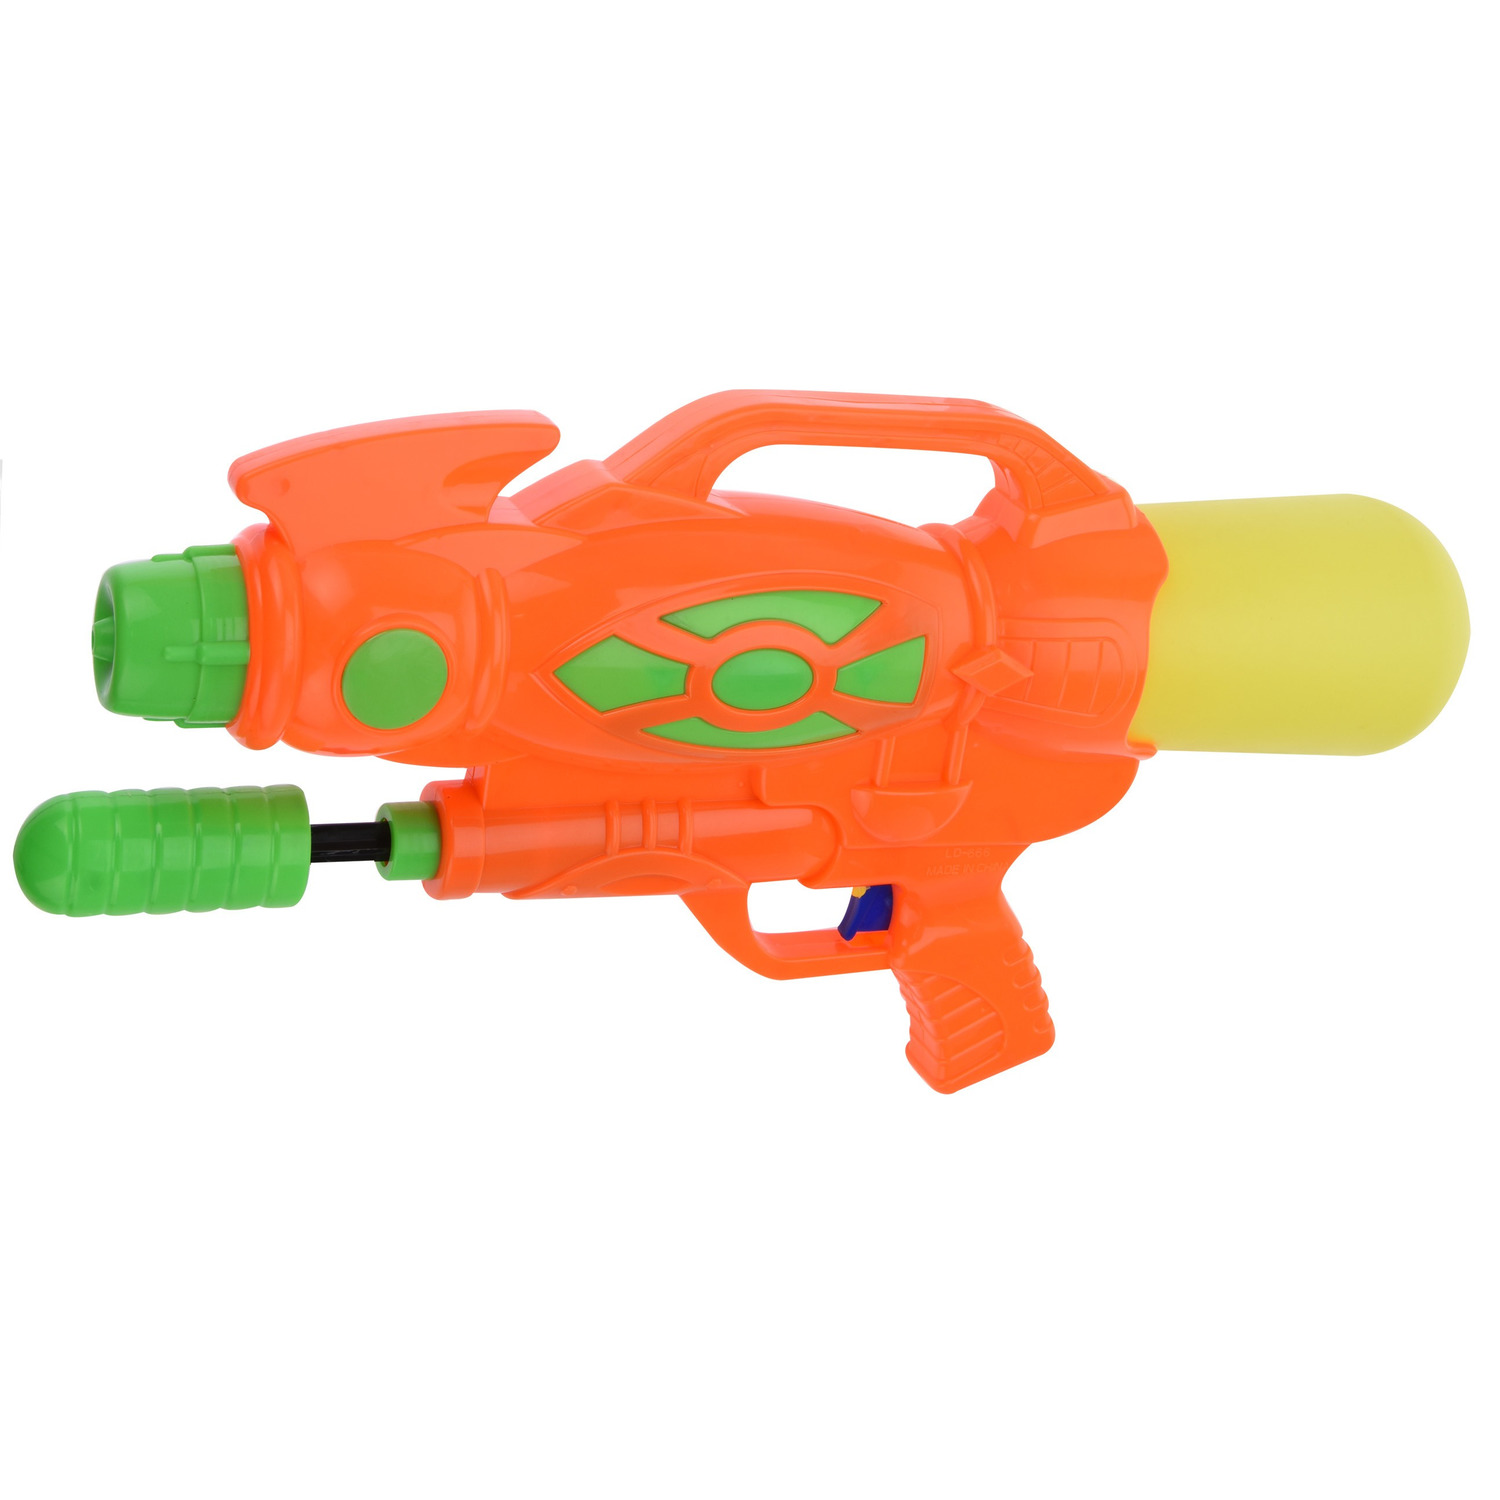 1x Waterpistool-waterpistolen 47 cm oranje met pomp